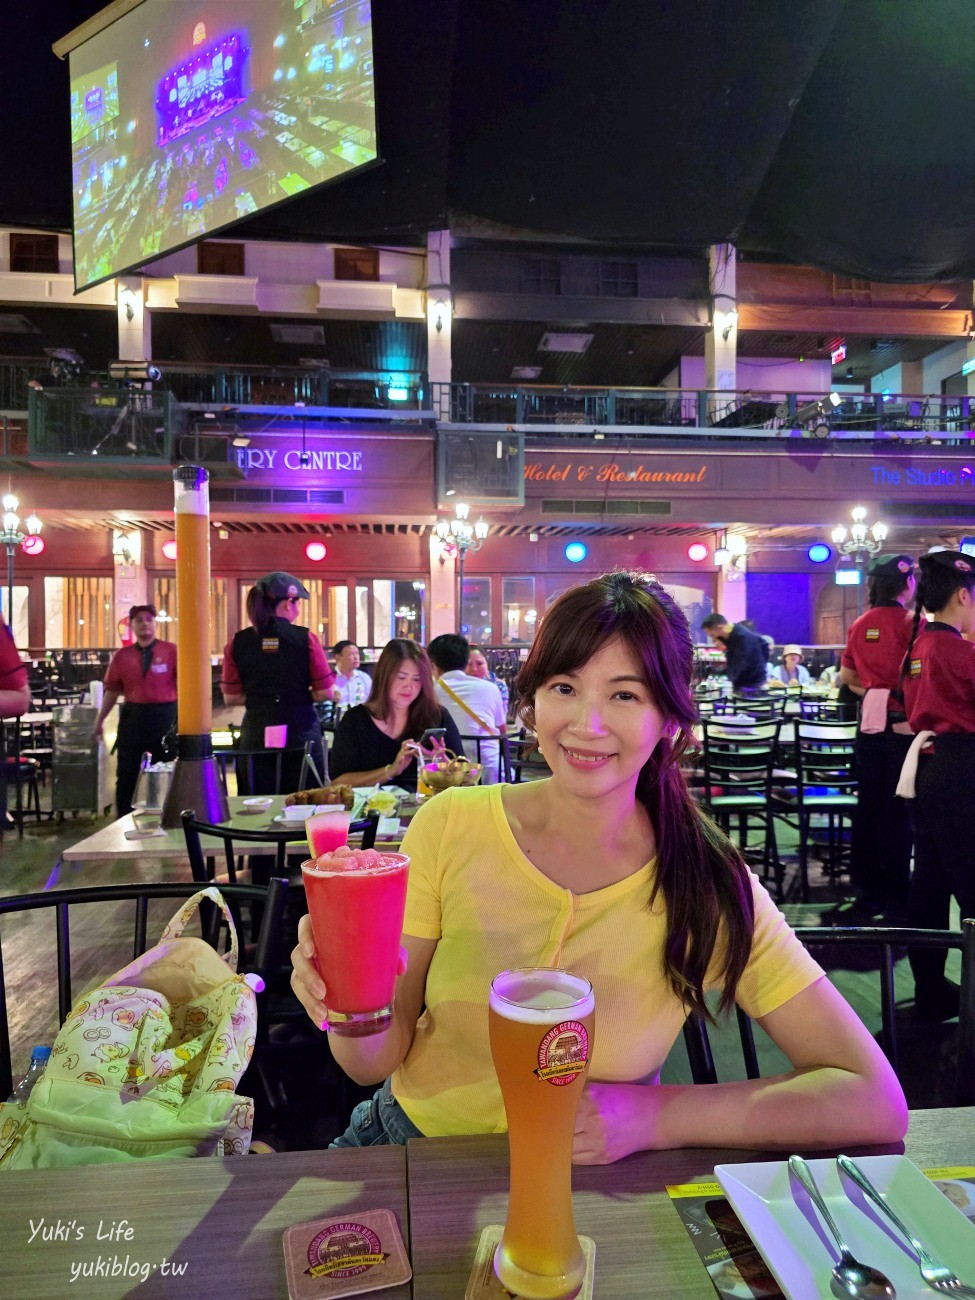 曼谷酒吧餐廳【Tawandang German Brewery】現場大舞台表演氣氛超嗨~有冷氣超推薦必去 - yukiblog.tw